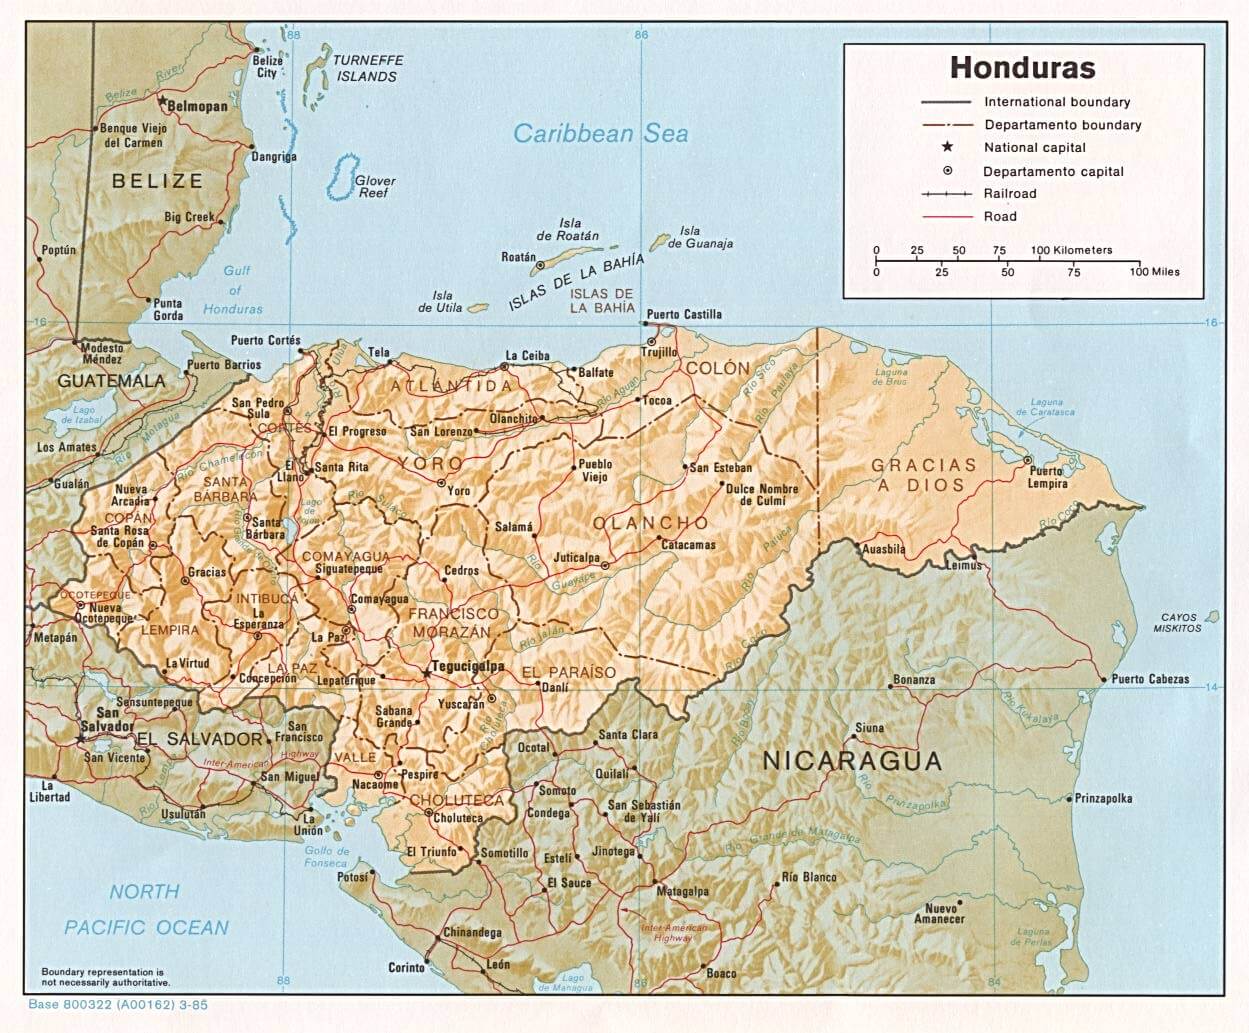 honduras beschattet linderung karte 1985